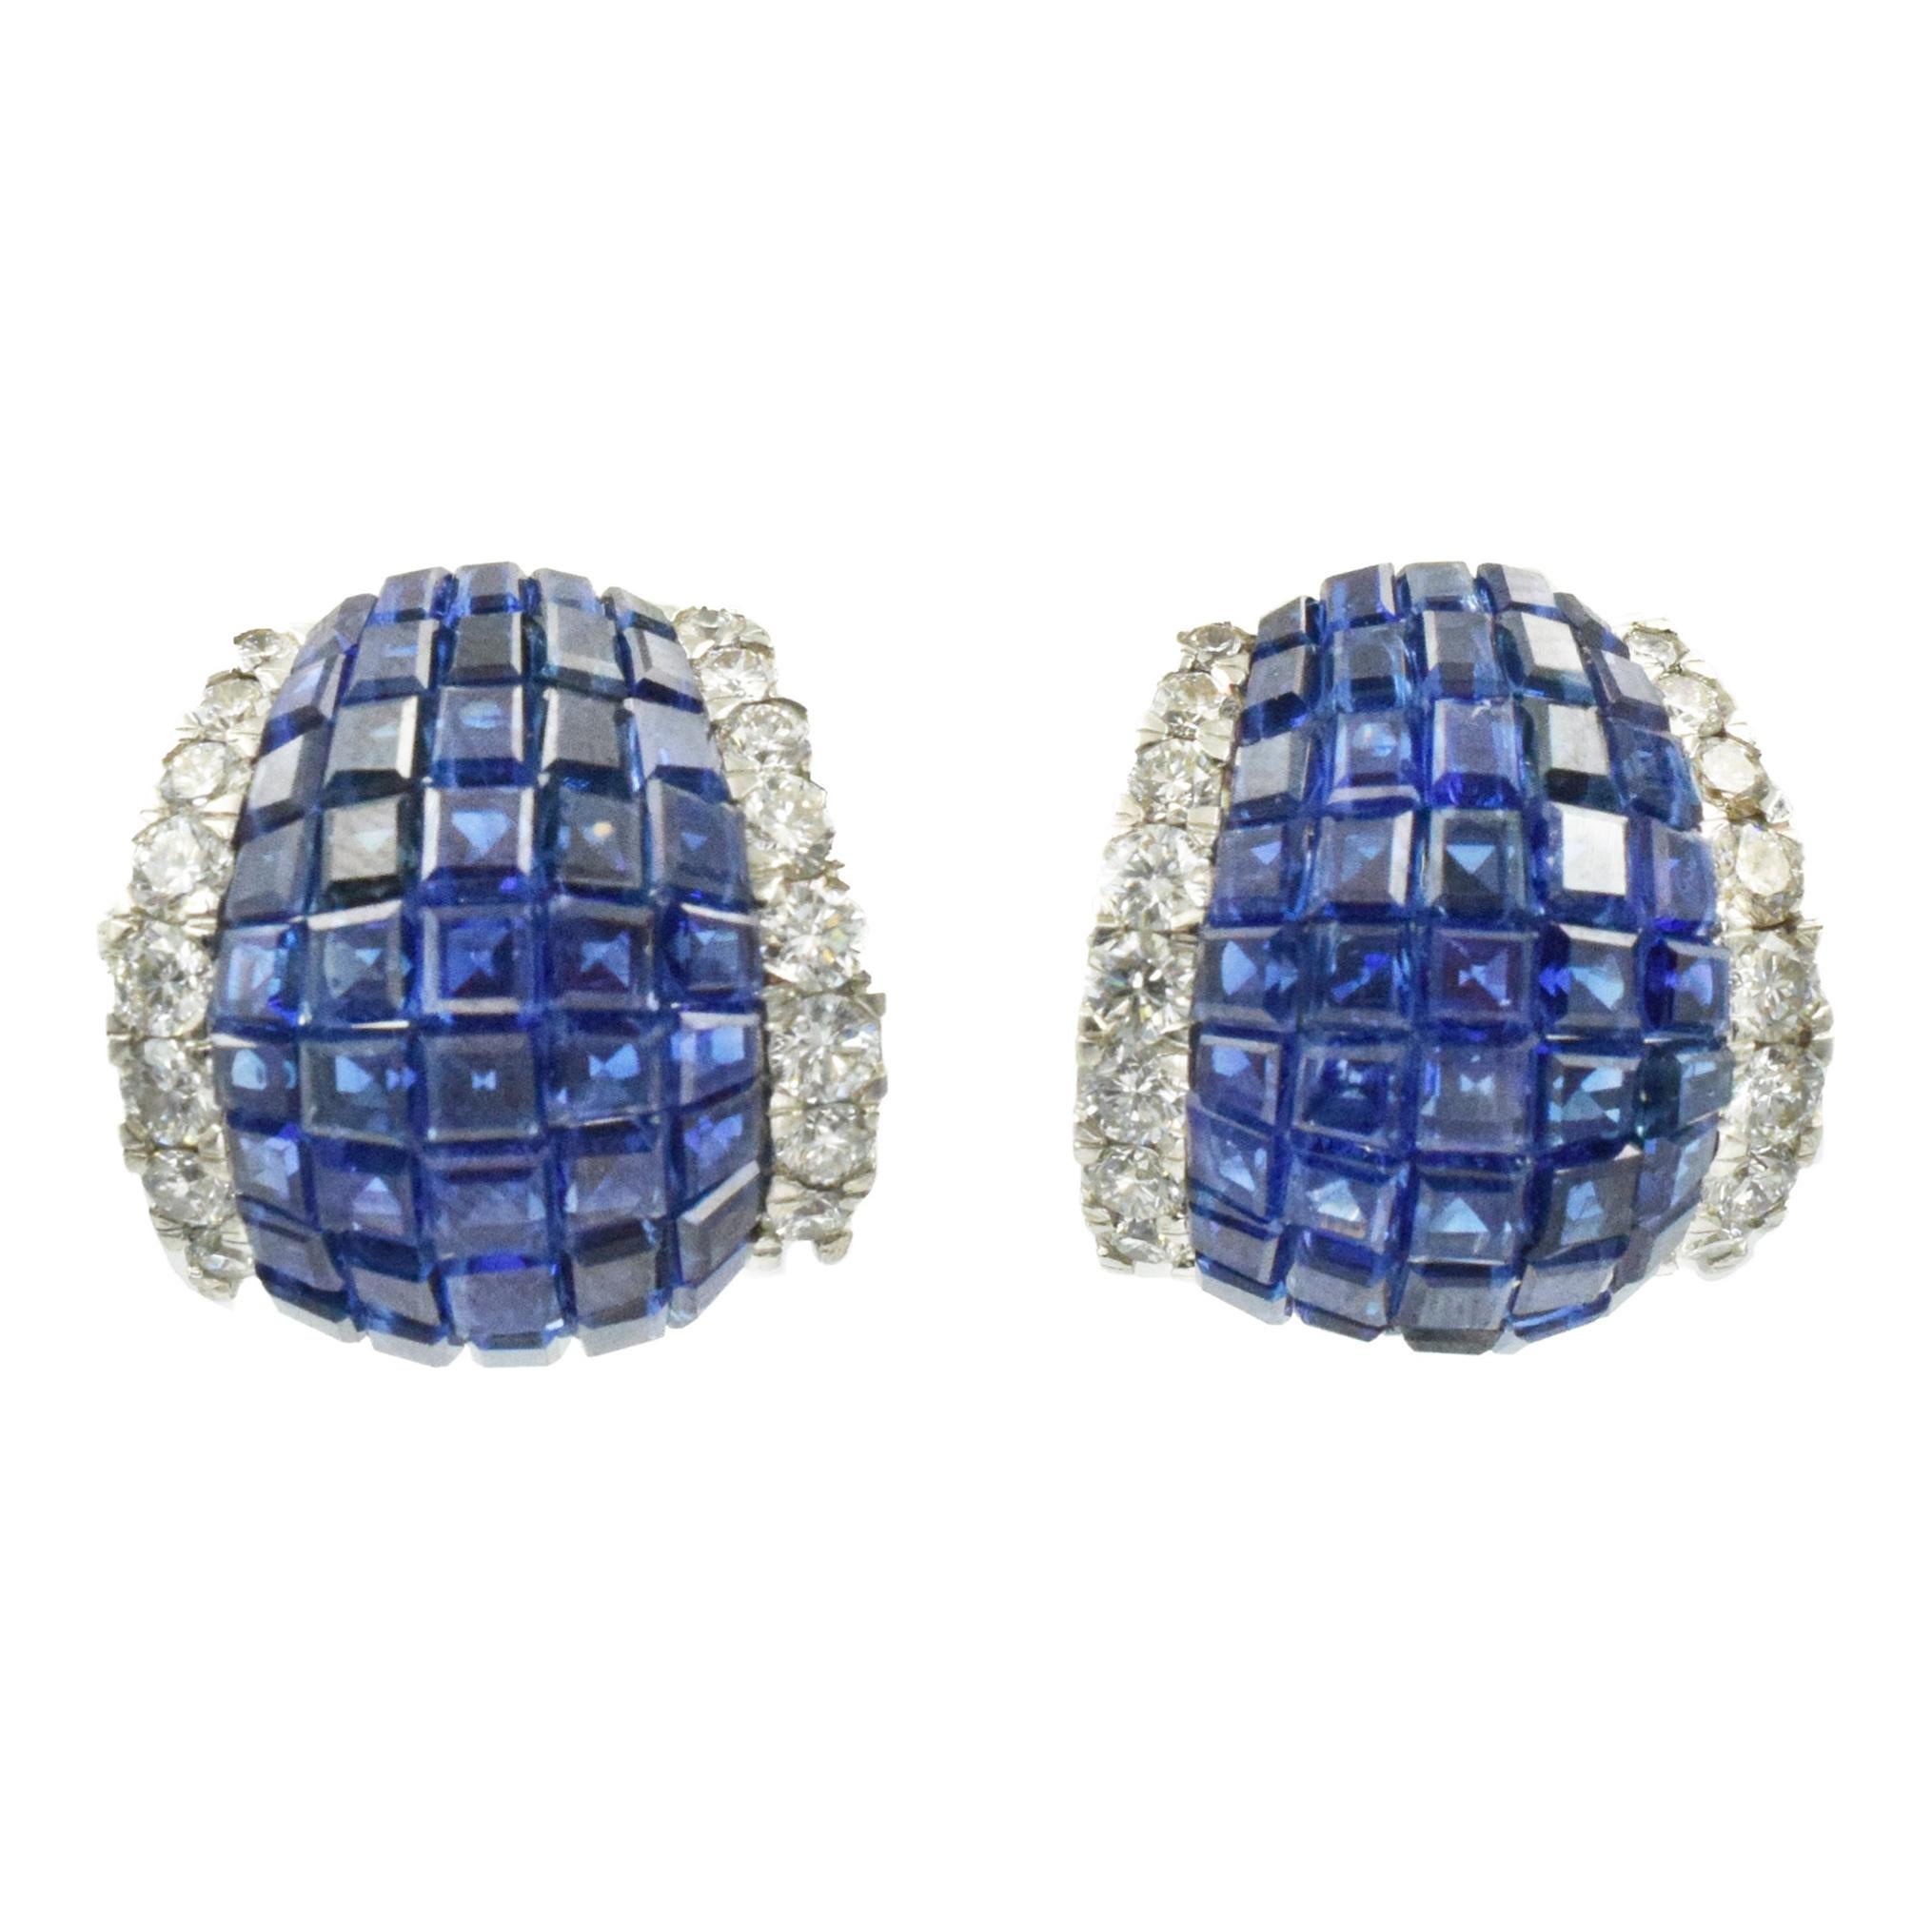 Oscar Heyman "Mystery" Set Sapphire and Diamond Earrings